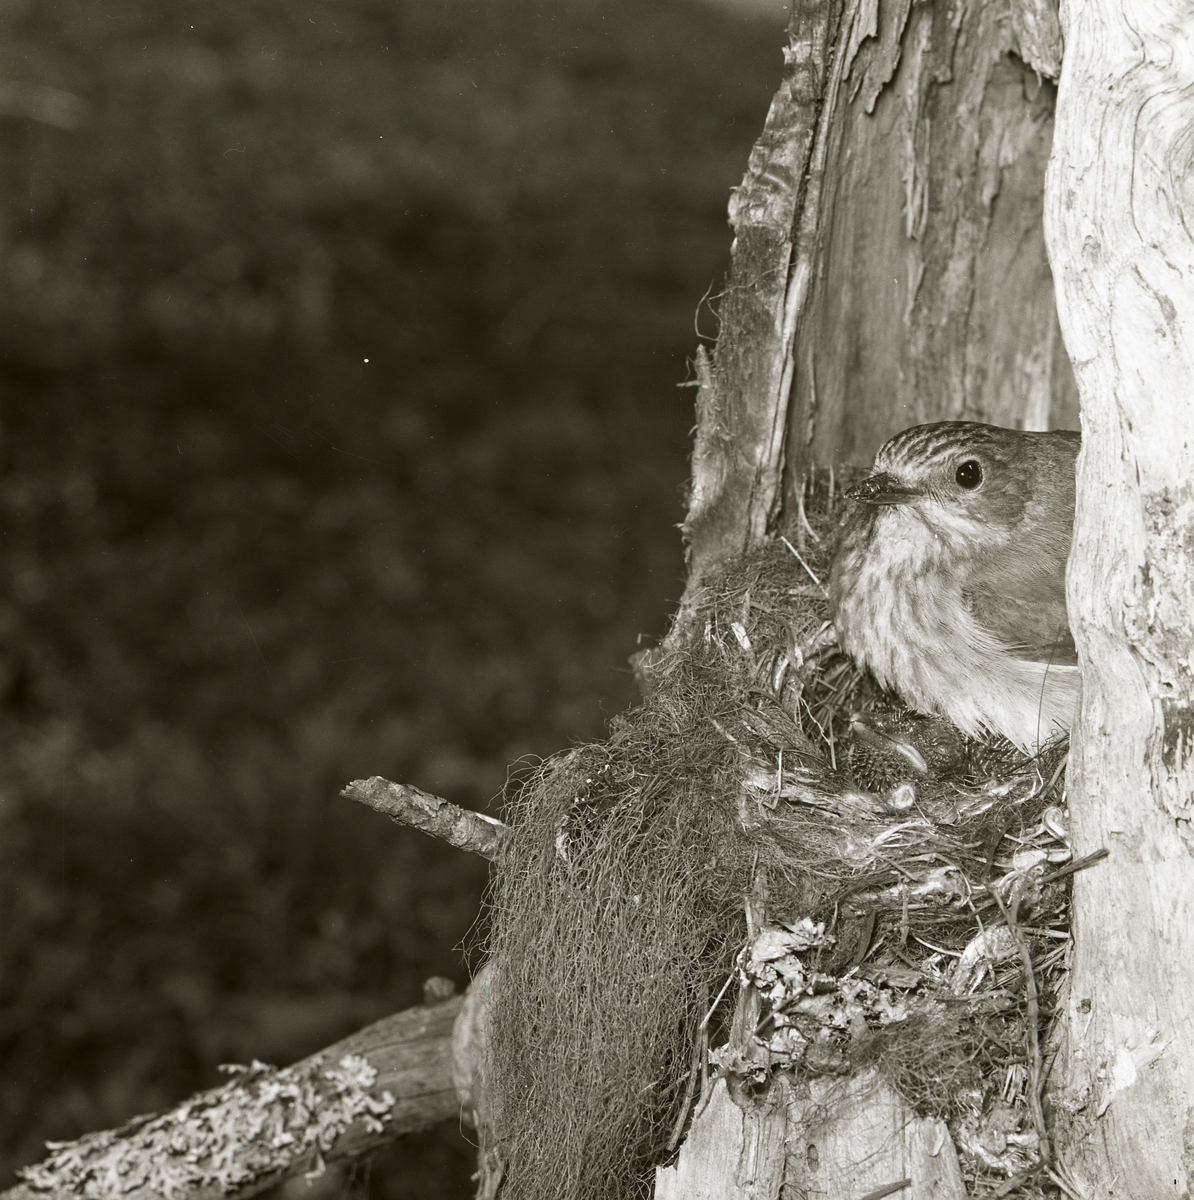 Lavar, mossa och kvistar sticker ut från öppningen i trädet där fågeln byggt bo. Fågelhonans näbb tittar också ut medan hon värmer en gökunge under sina varma fjäderdun. Ungens ögon och näbb är stängda medan den får omvårdnad från honan.